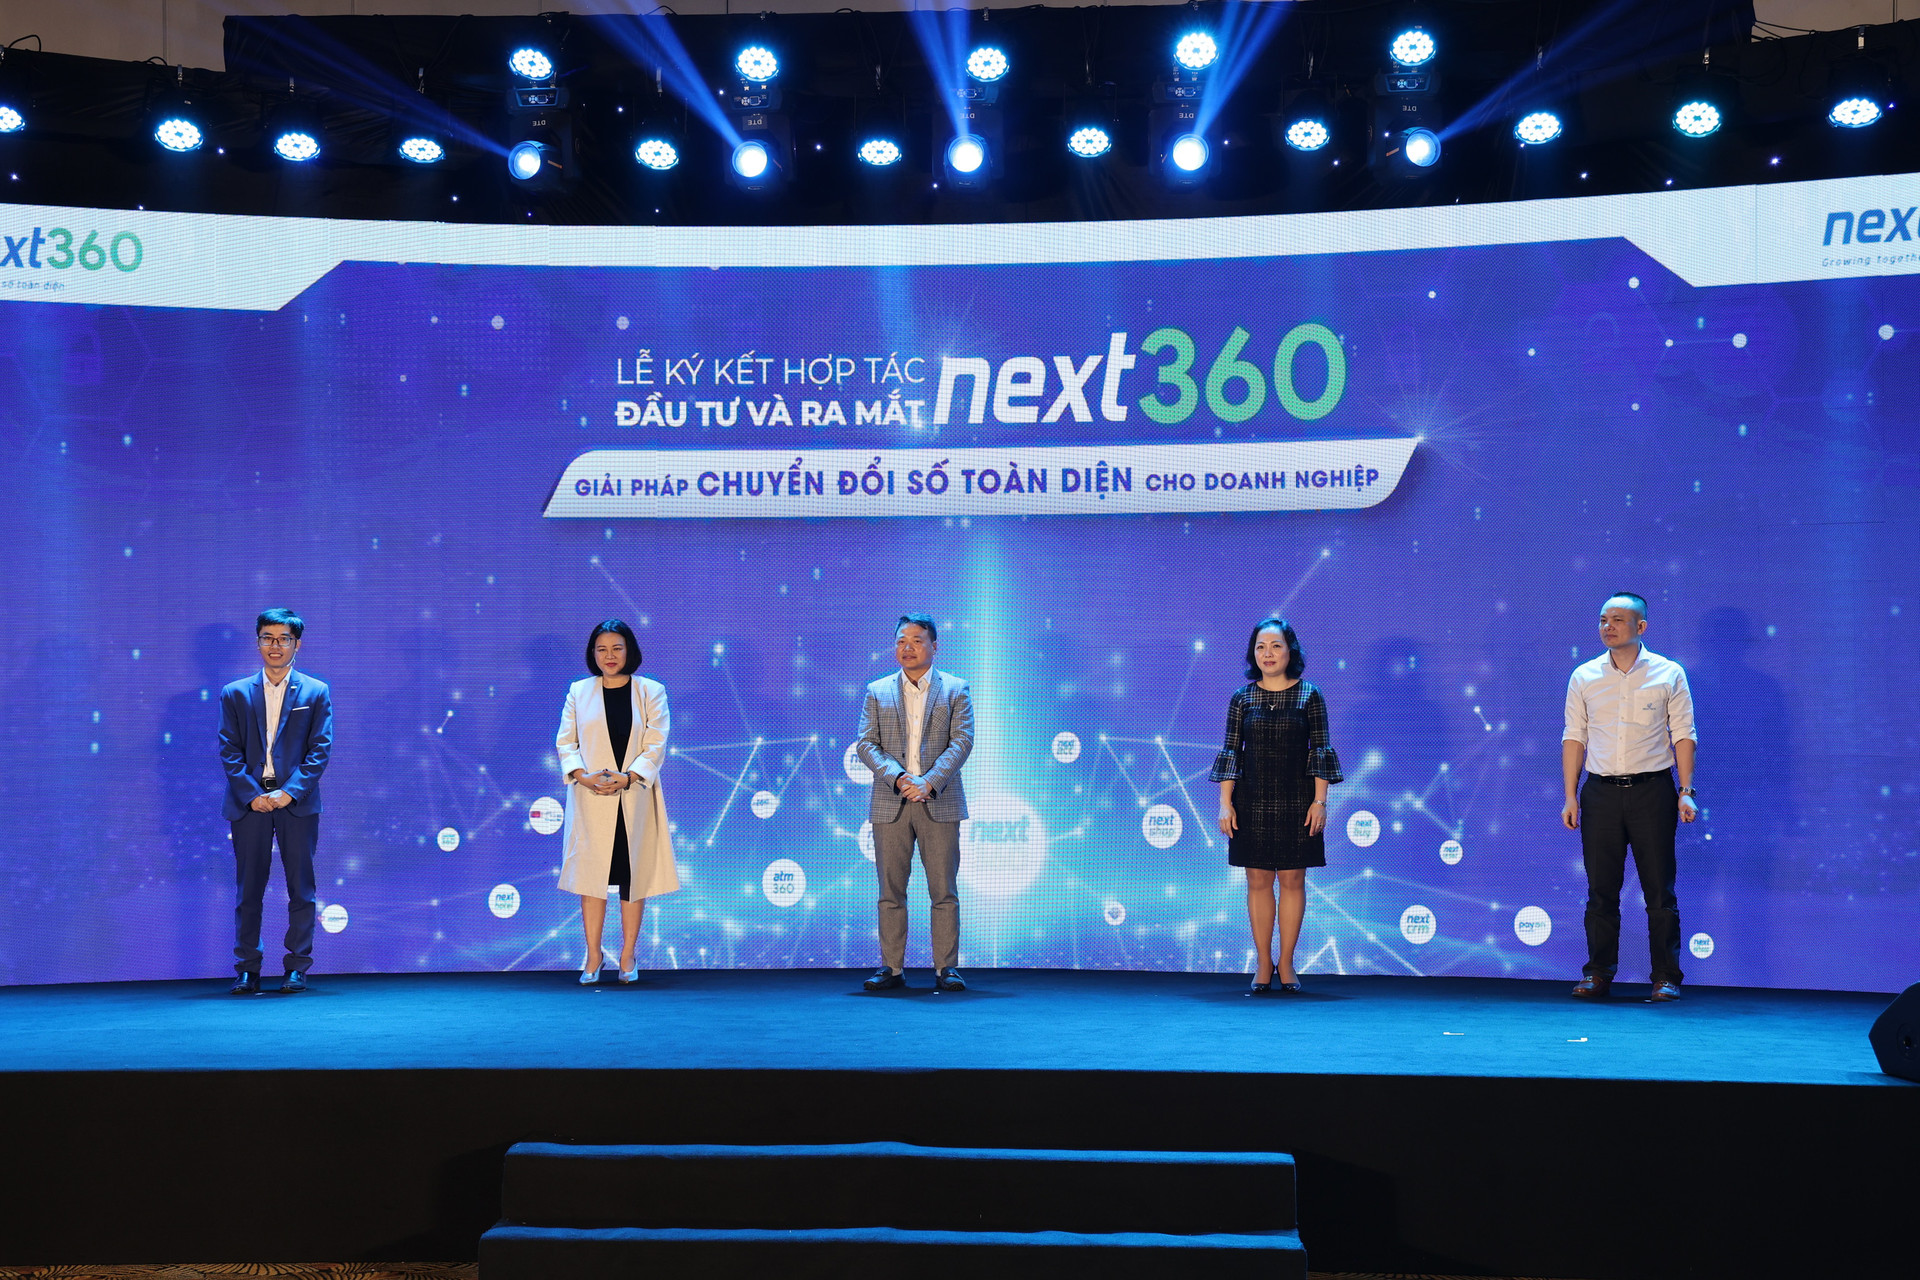 Hệ sinh thái “Make in Vietnam” Next360 cam kết hỗ trợ CĐS cho một triệu doanh nghiệp siêu nhỏ - Ảnh 2.